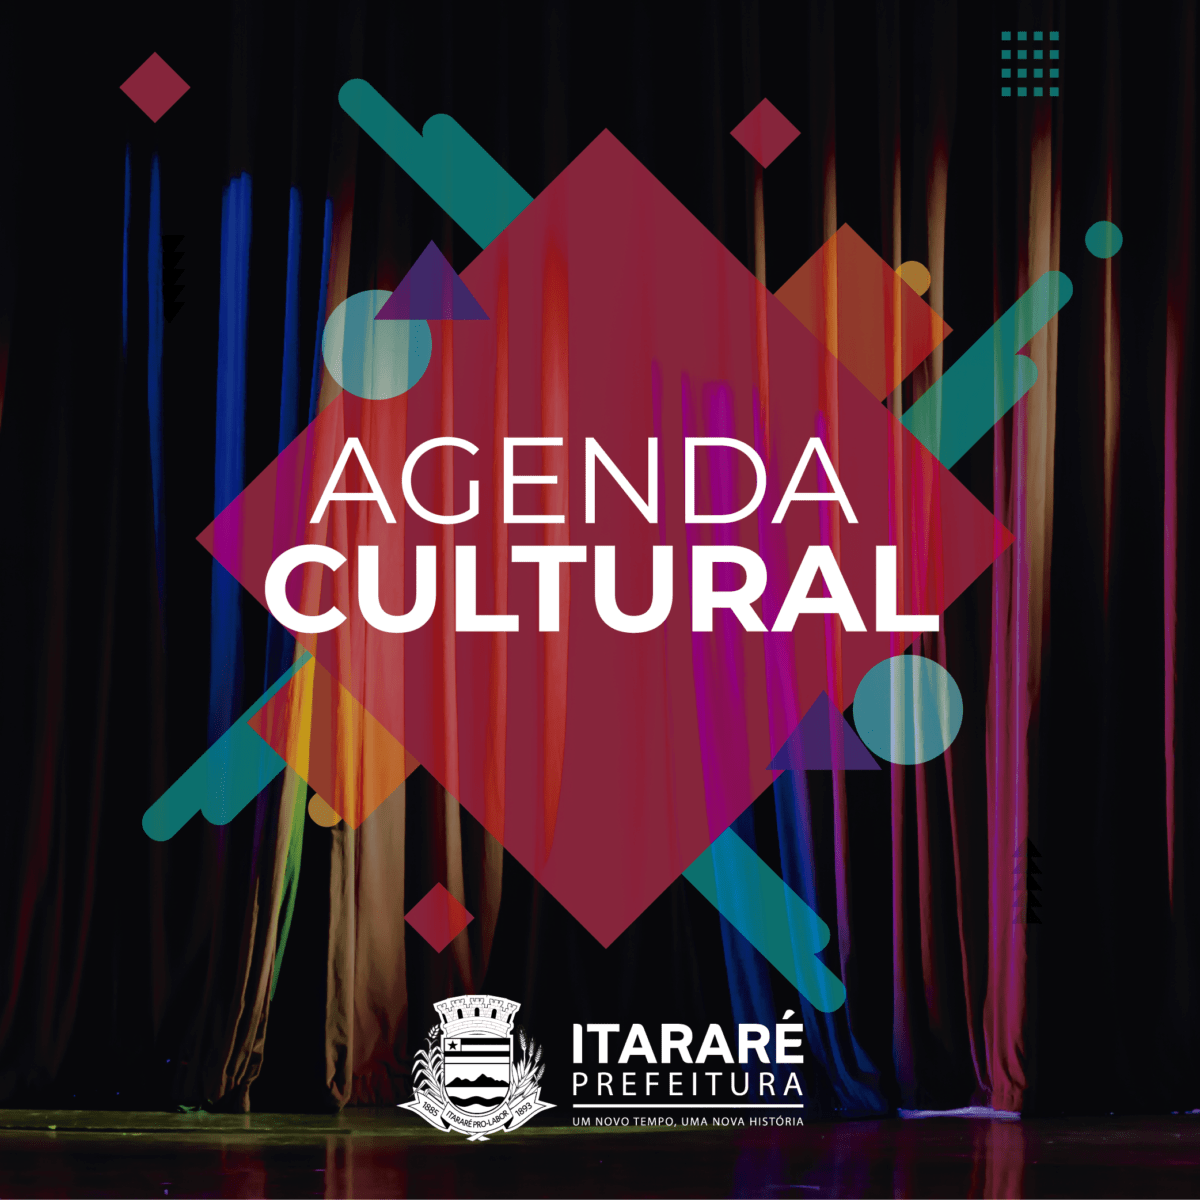 Agenda Cultural: Prefeitura de Itararé (SP) promove show musical e exibição da final da Copa do Brasil nesta quarta-feira (17) na praça São Pedro